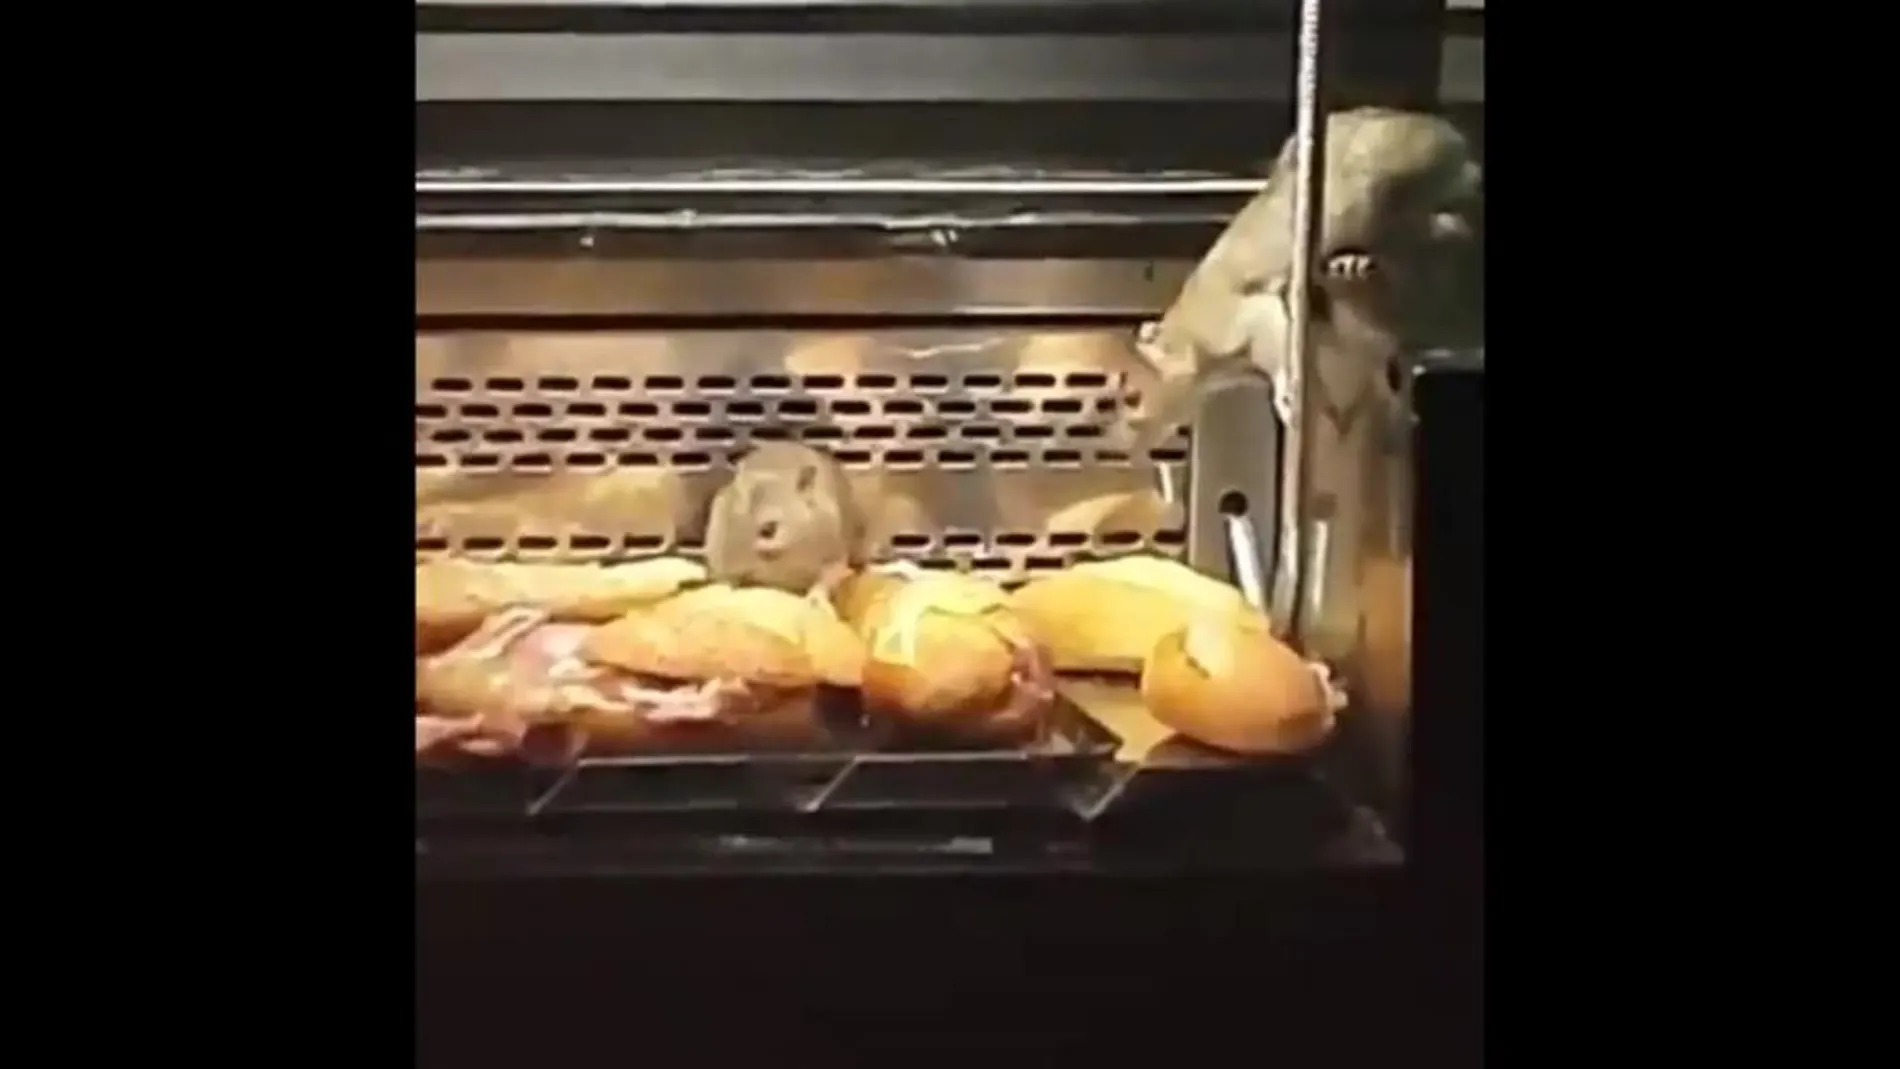 Precintan una panadería en Madrid tras detectar ratas en el escaparate